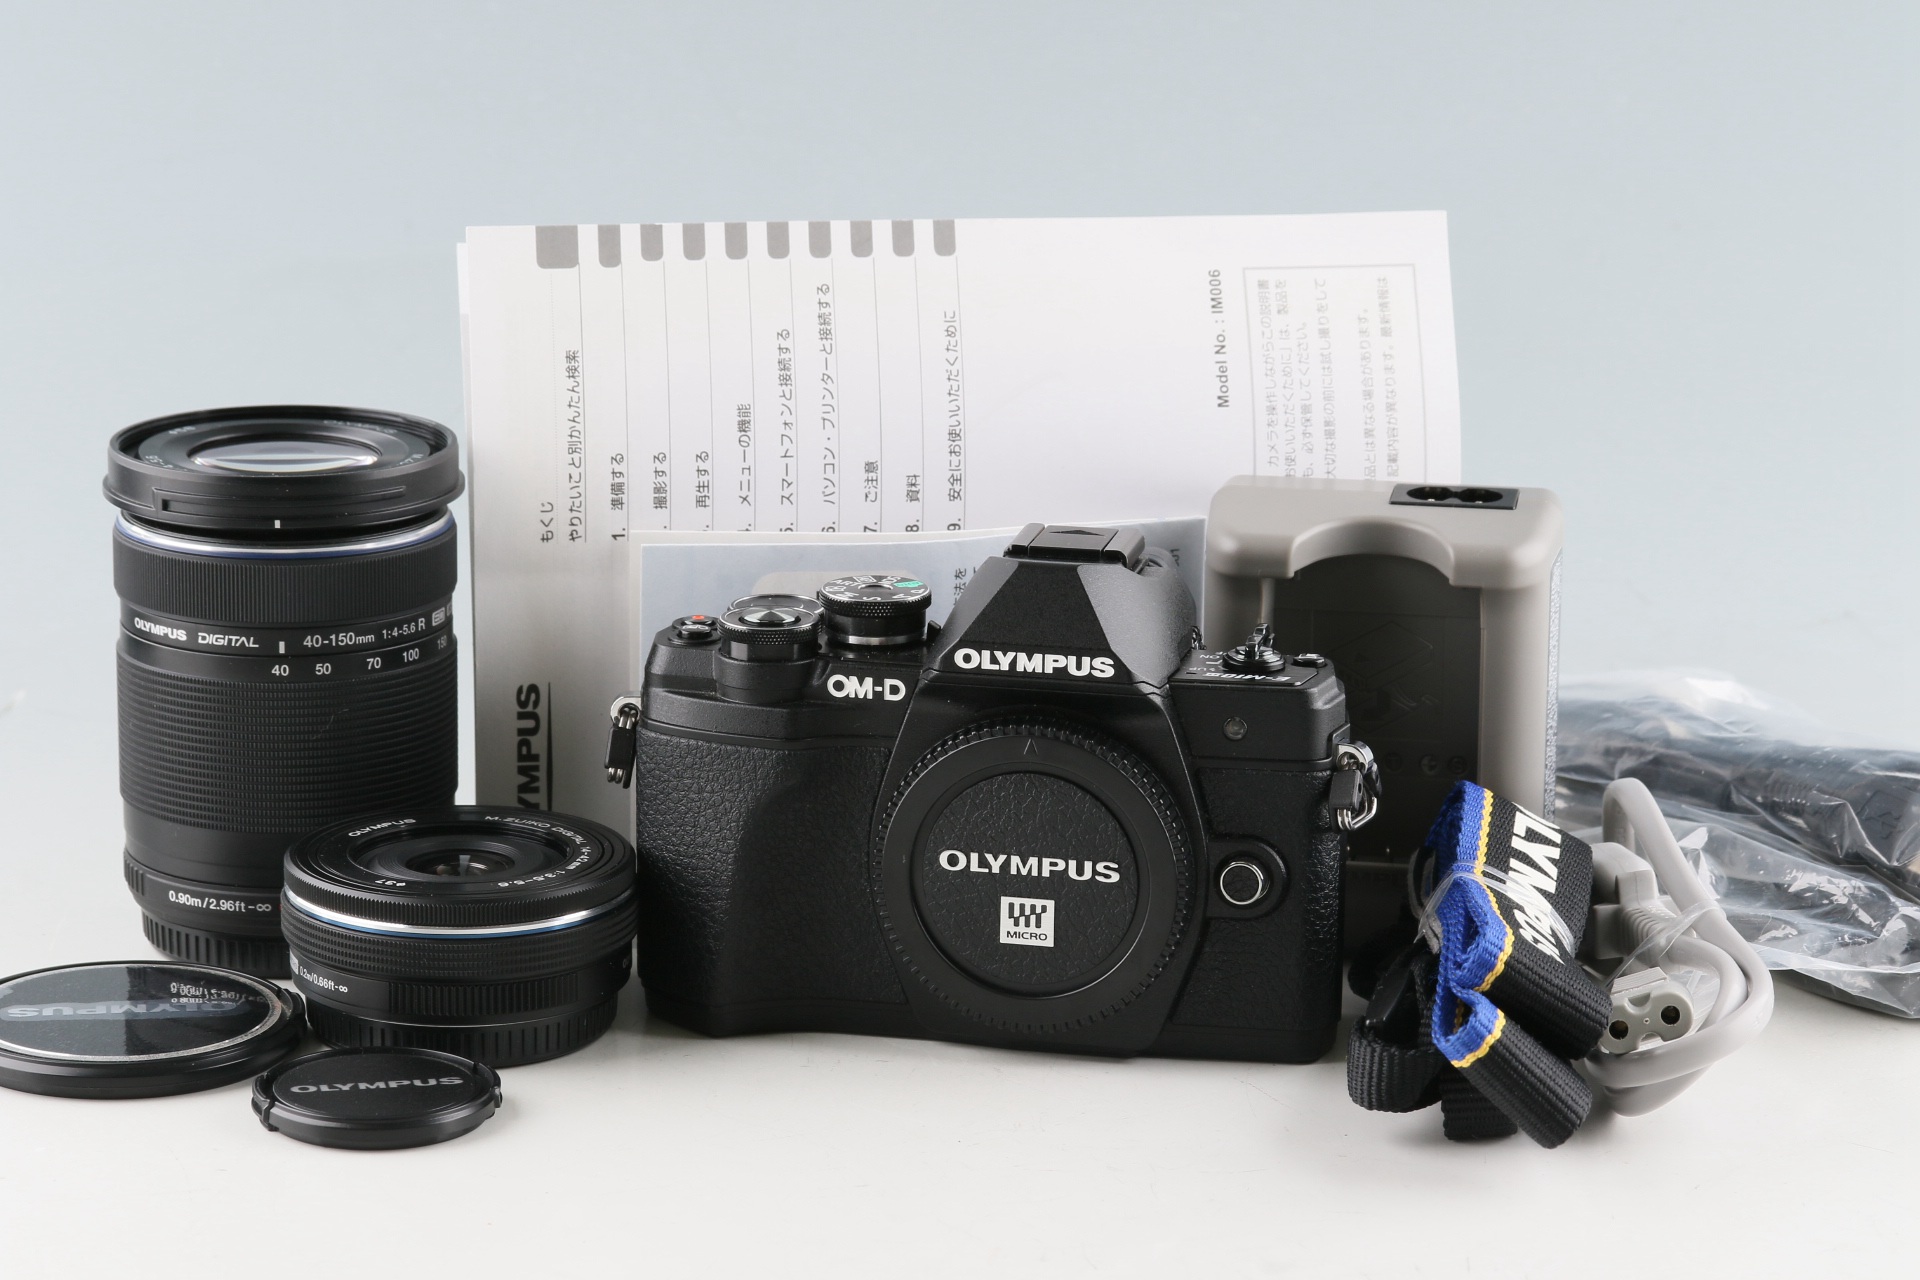 Olympus OM-D E-M10 III + M. Zuiko Digital 14-42mm F/3.5-5.6 + 40-150mm F/4-5.6 Lens *Shutter Count:7